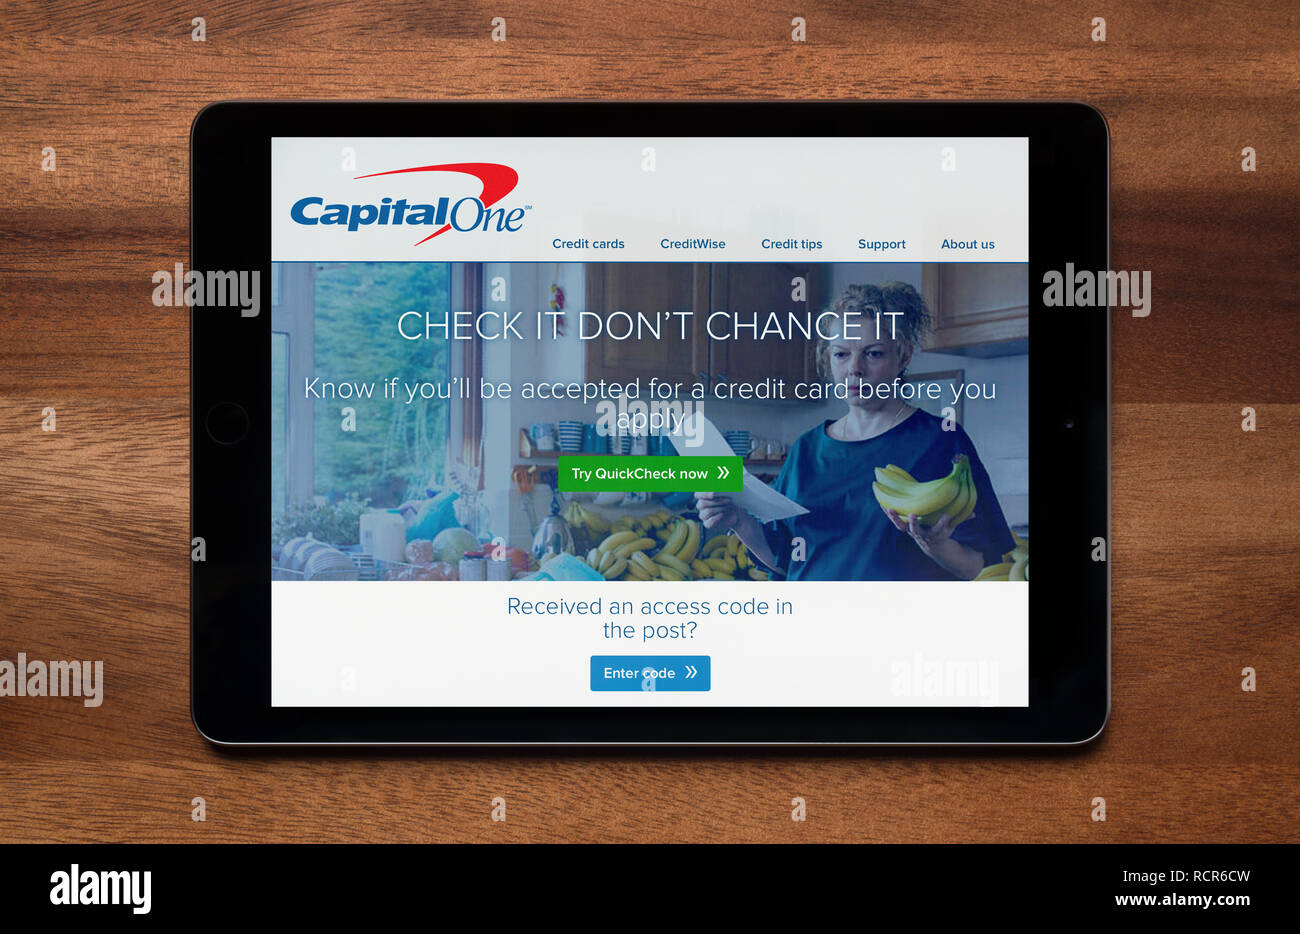 El sitio web de Capital One se ha visto en un iPad, que descansa sobre una mesa de madera (uso Editorial solamente). Foto de stock